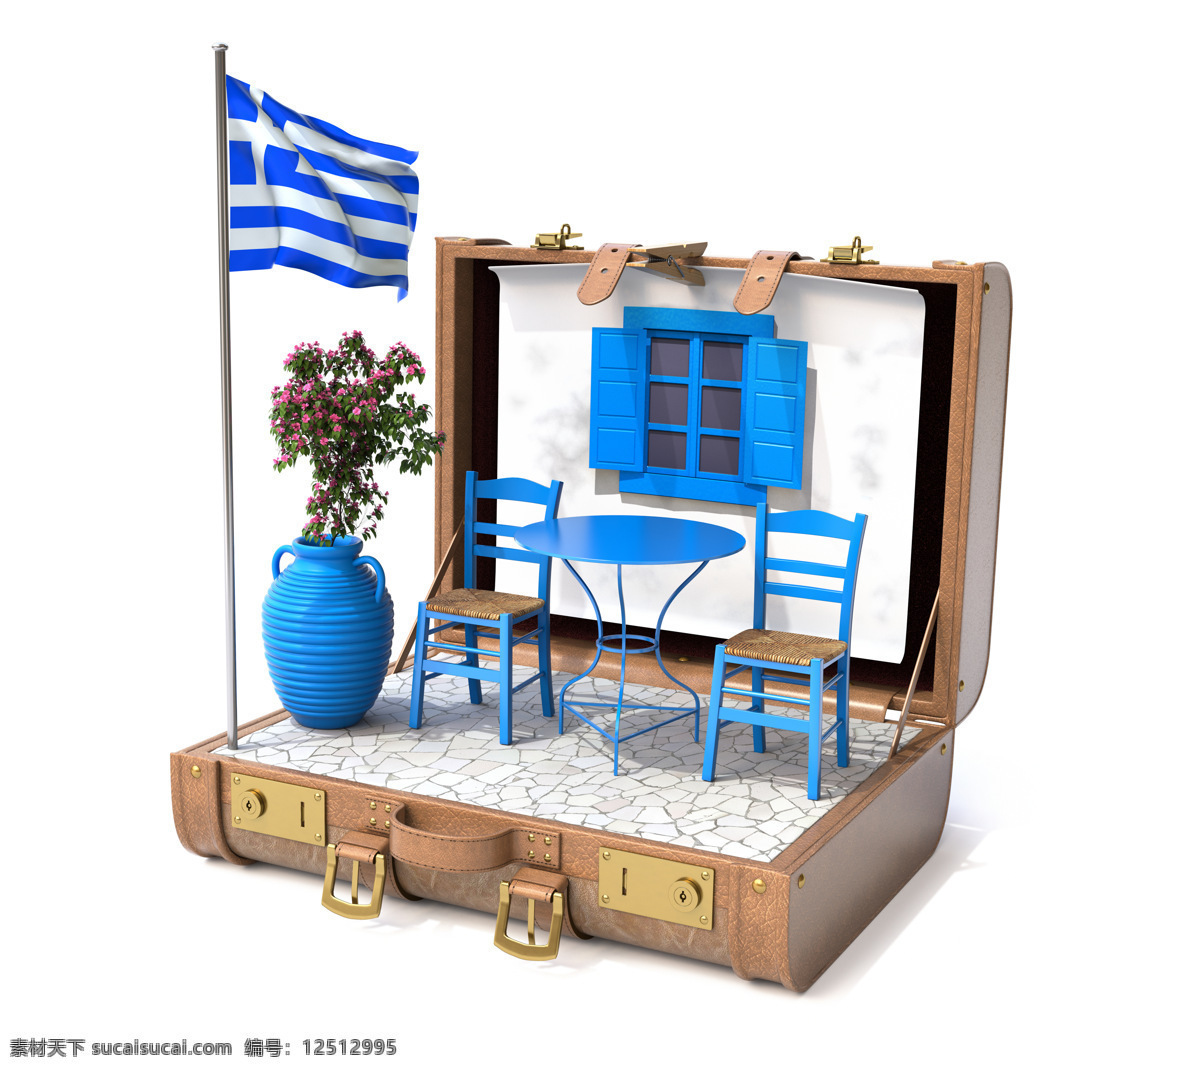 希腊 国旗 房子 希腊国旗 希腊文化 国旗背景 旗帜 椅子 旅行箱 地图图片 生活百科